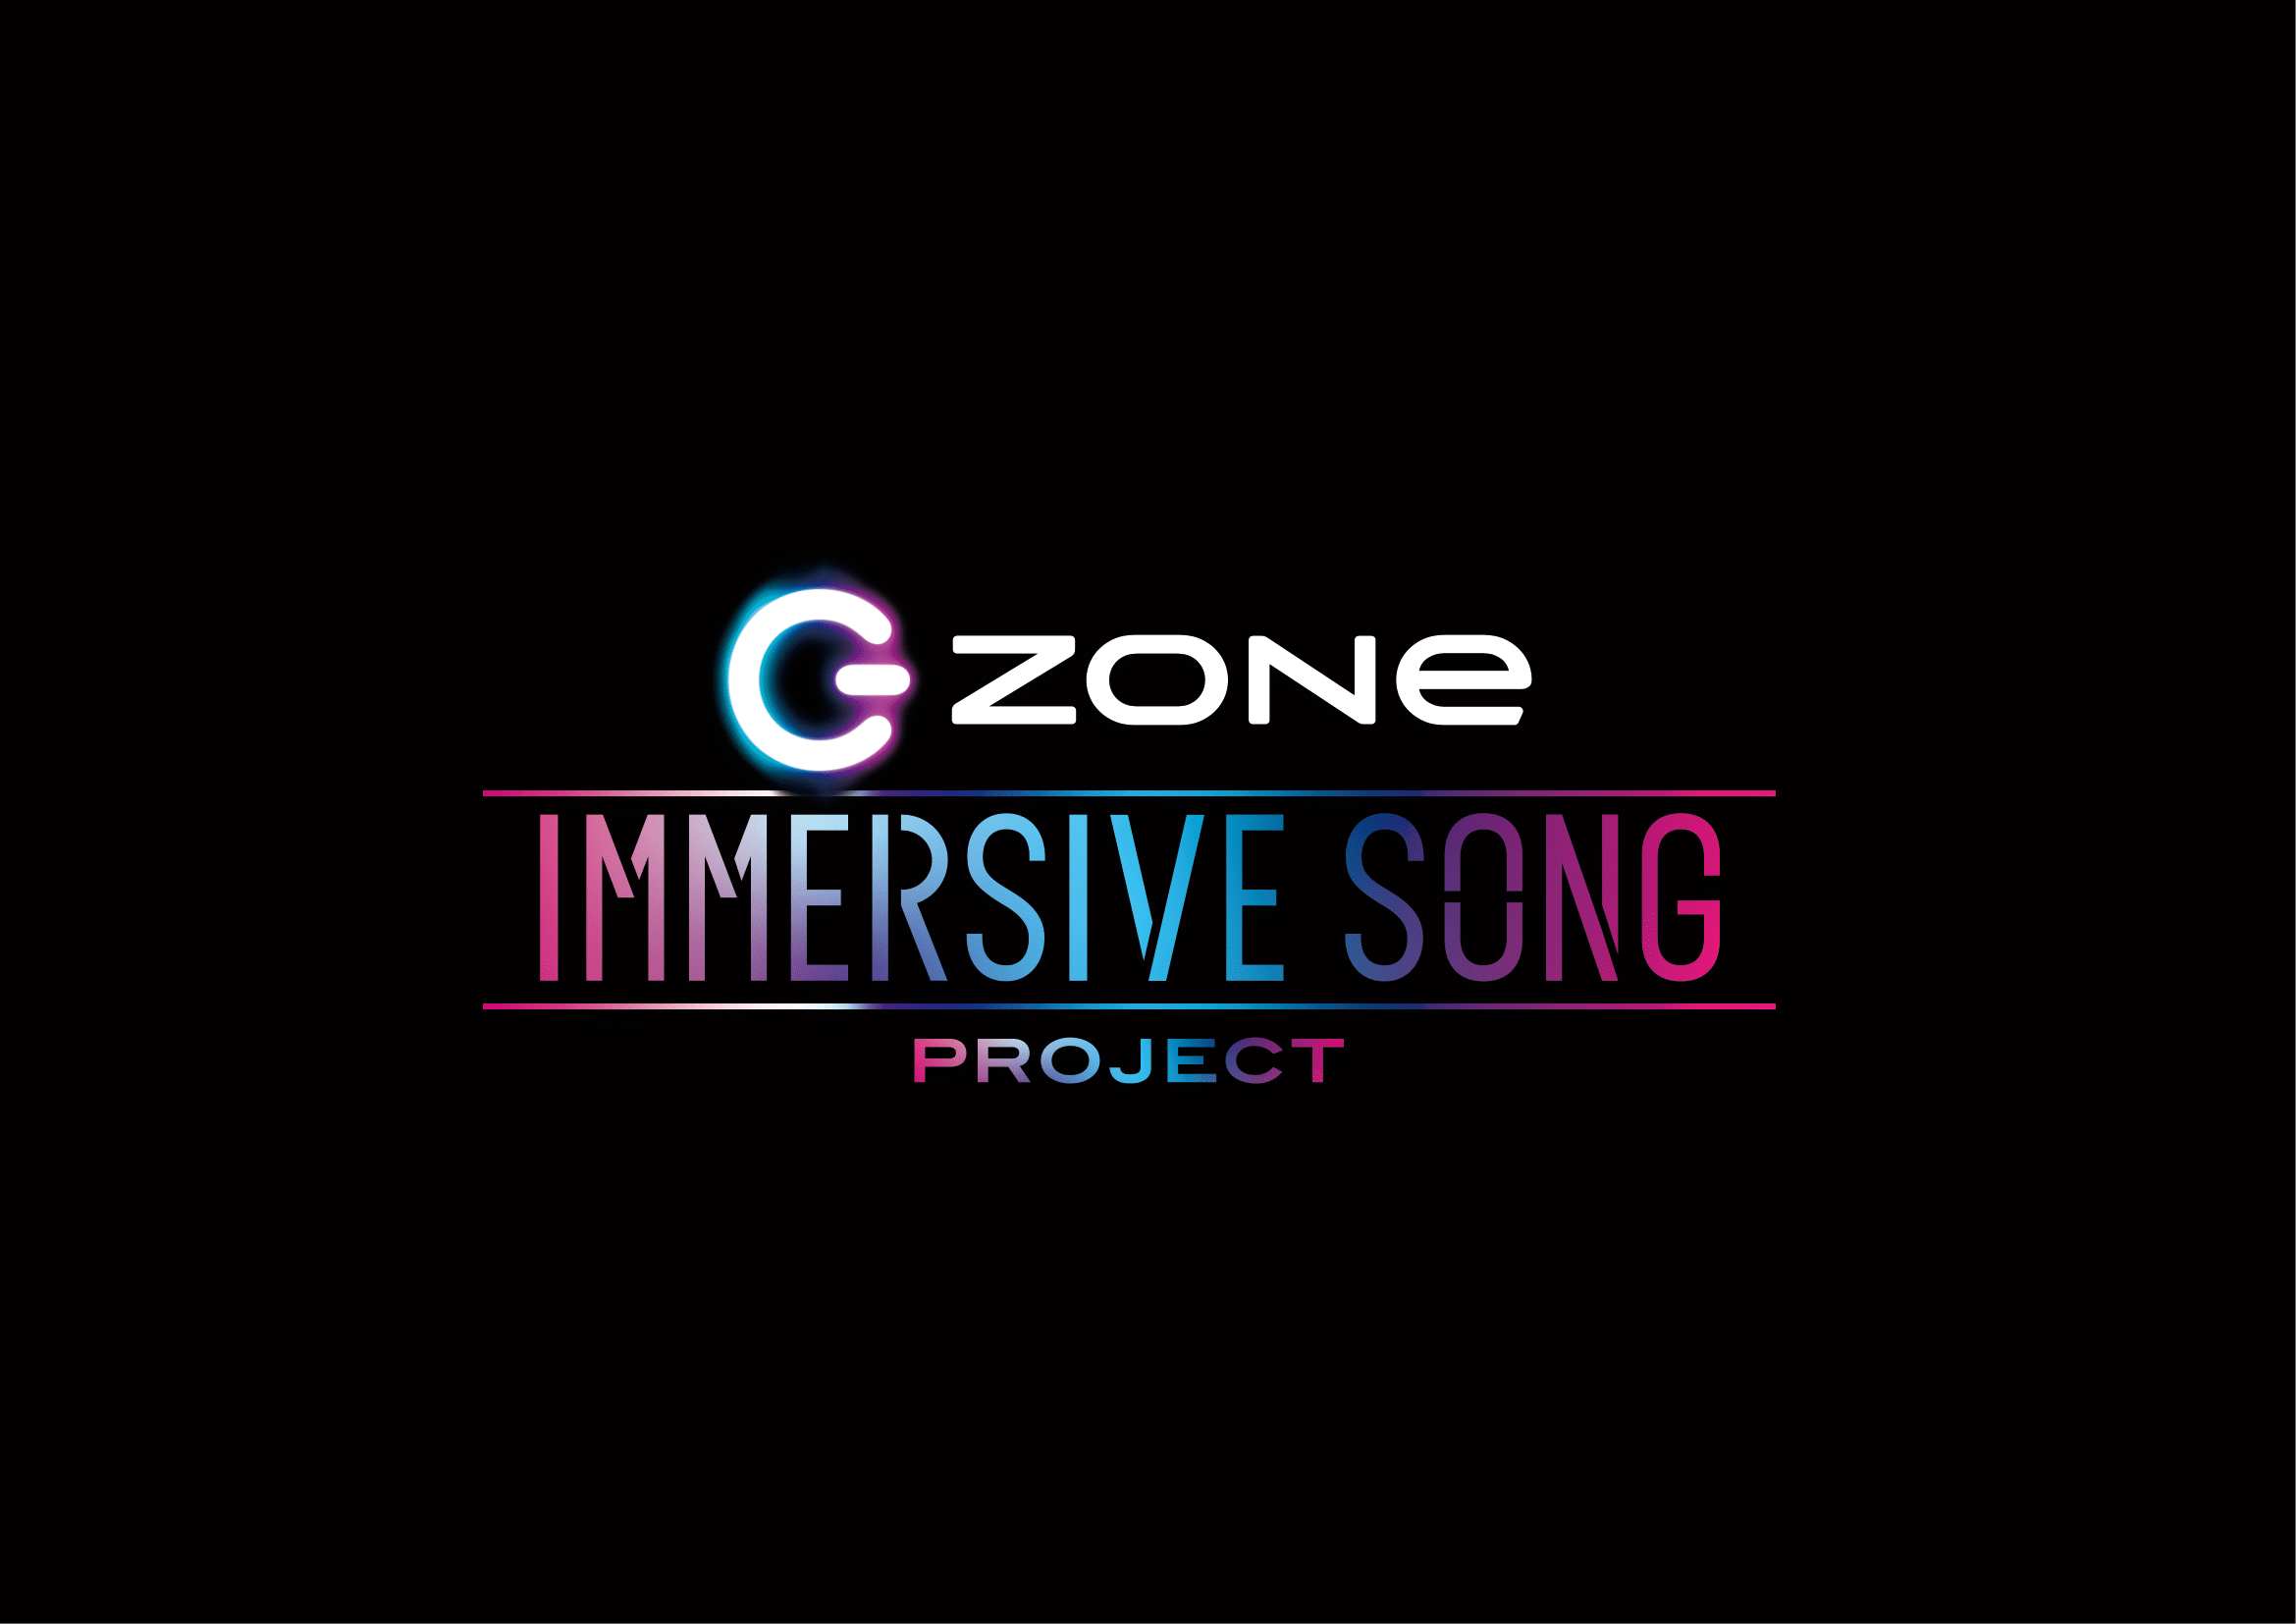 人気アーティストとのコラボレーション企画「ZONe IMMERSIVE SONG PROJECT」